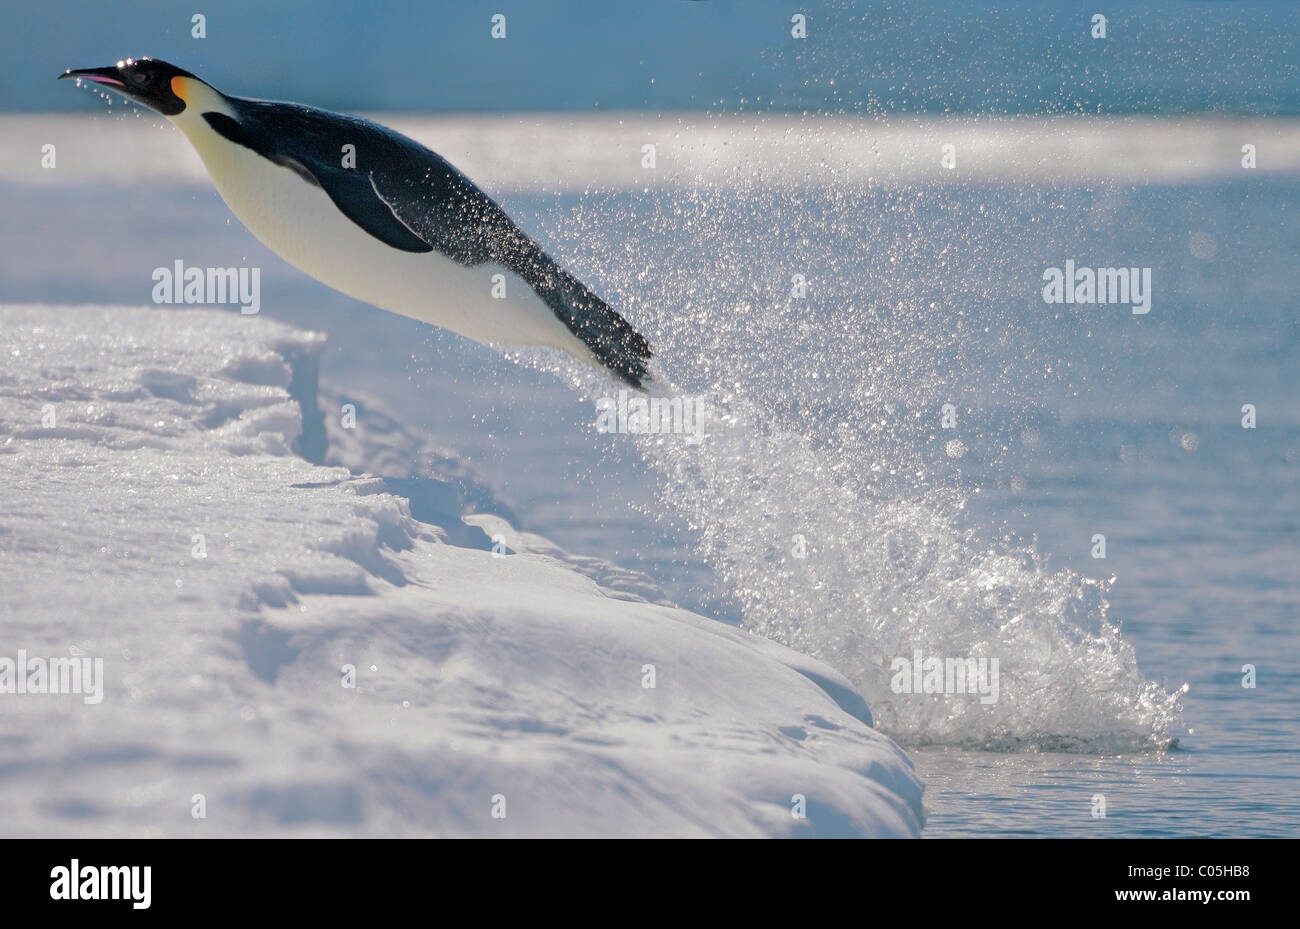 Manchot Empereur de sauter hors de l'eau à la lisière de glace, Snow Hill Island, mer de Weddell, l'Antarctique Banque D'Images